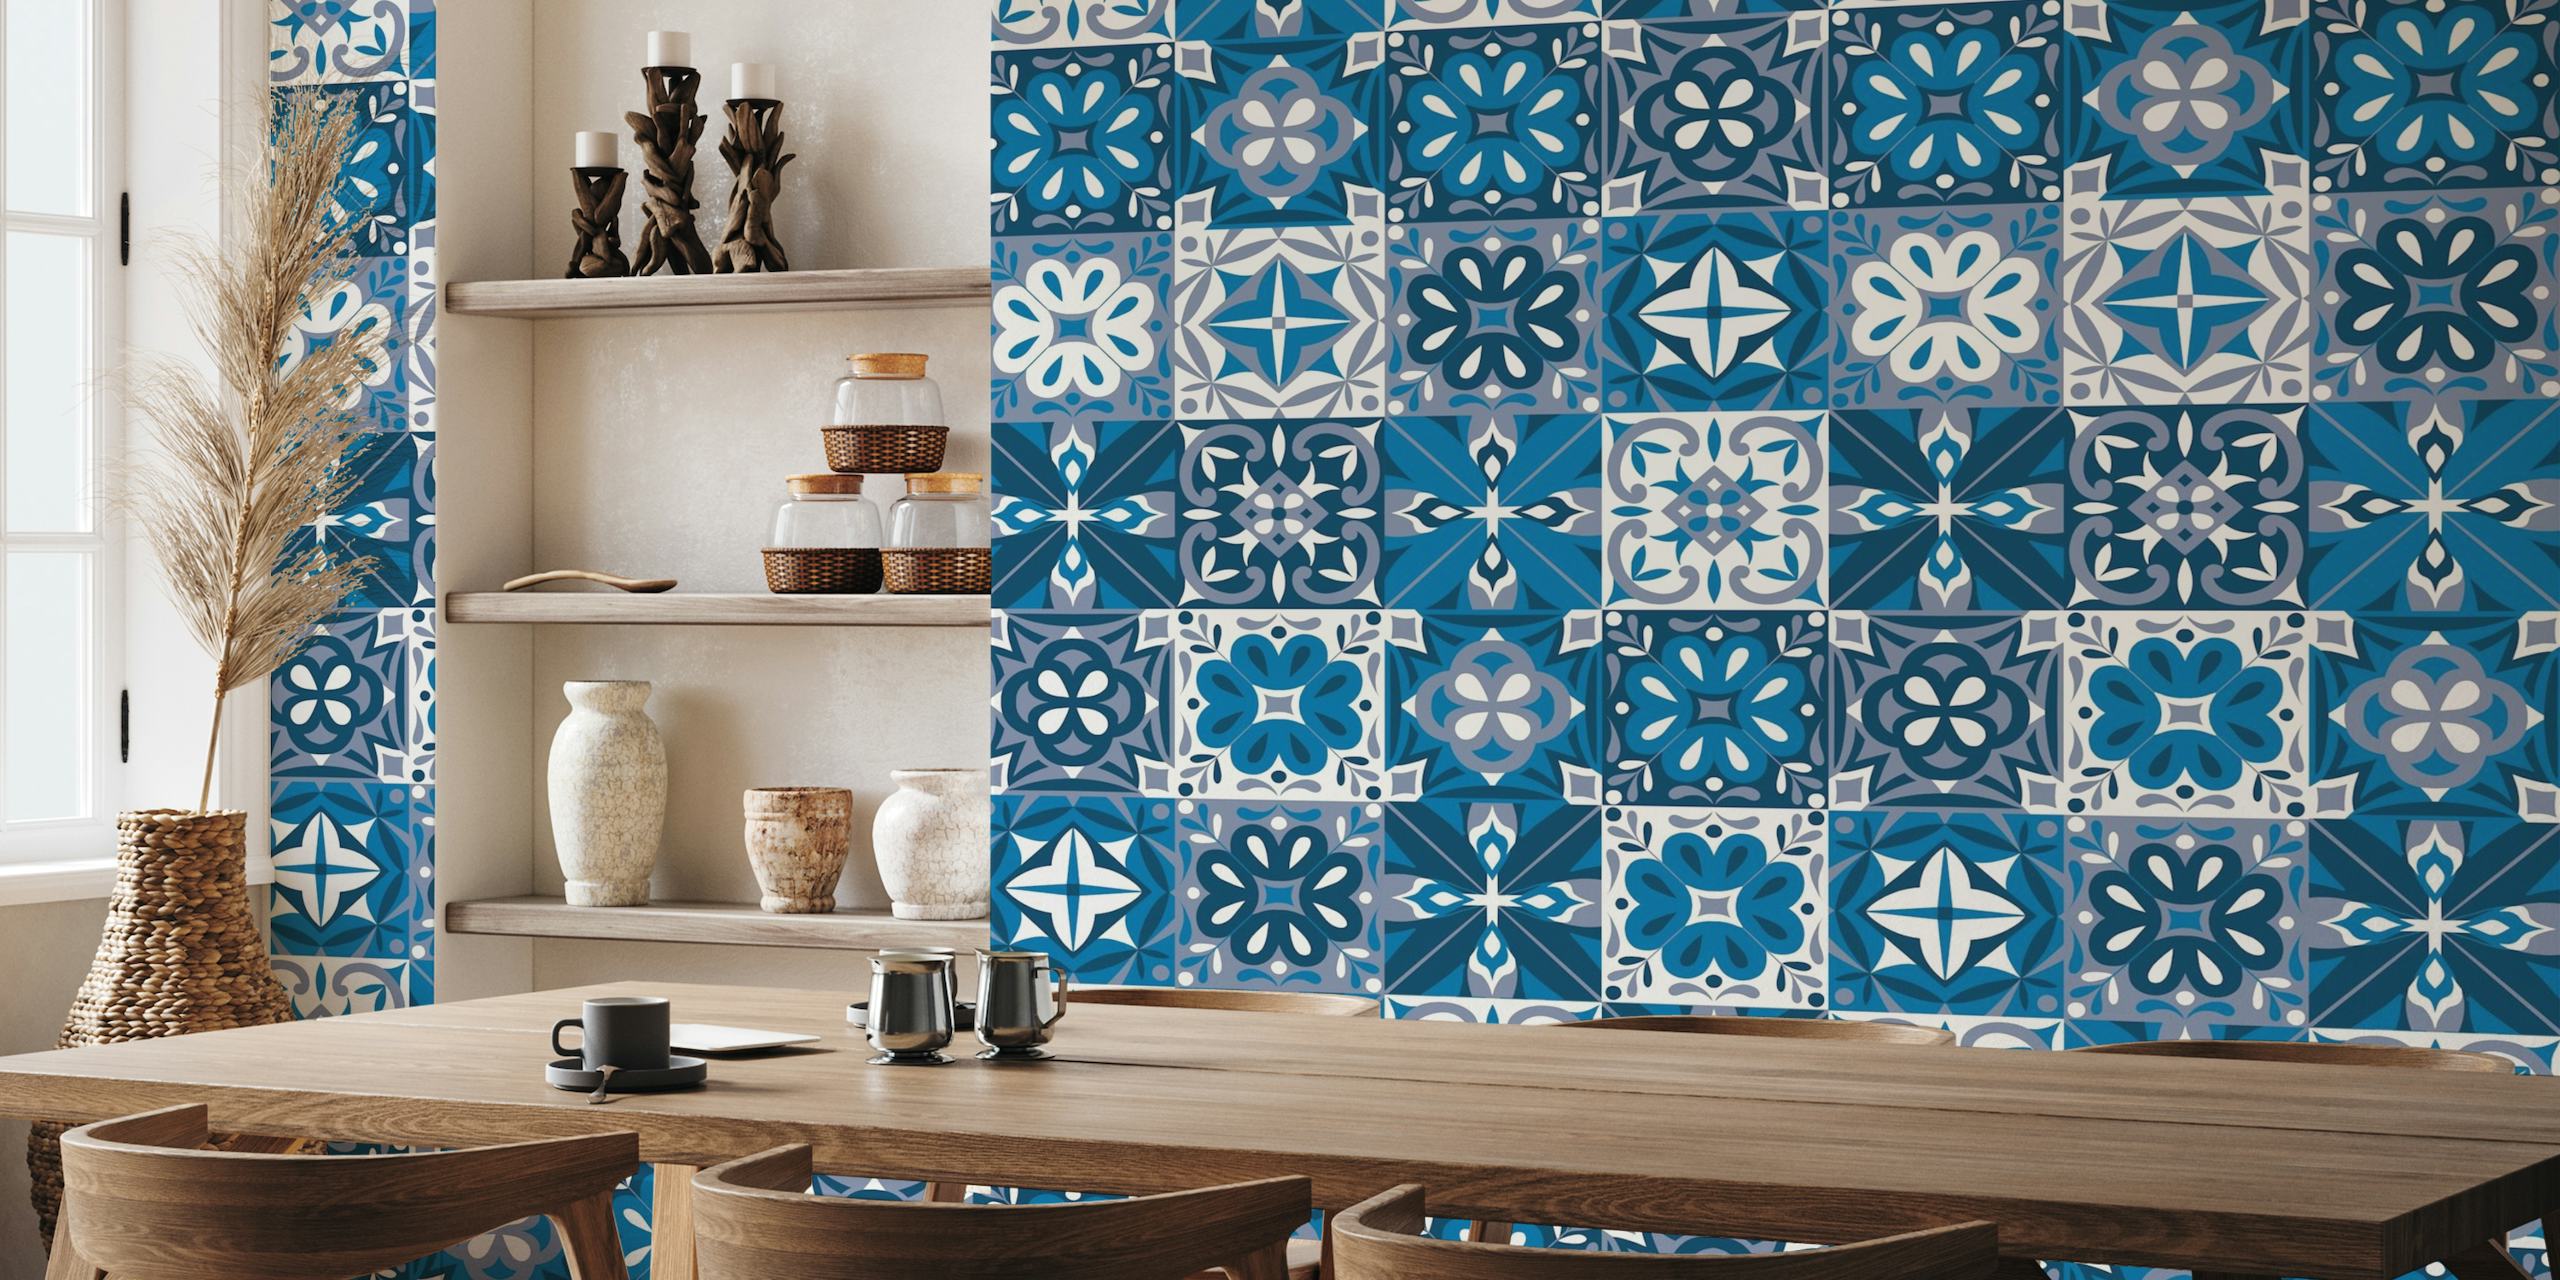 Portugees Azulejo-tegelpatroon in blauw en wit op een muurschildering